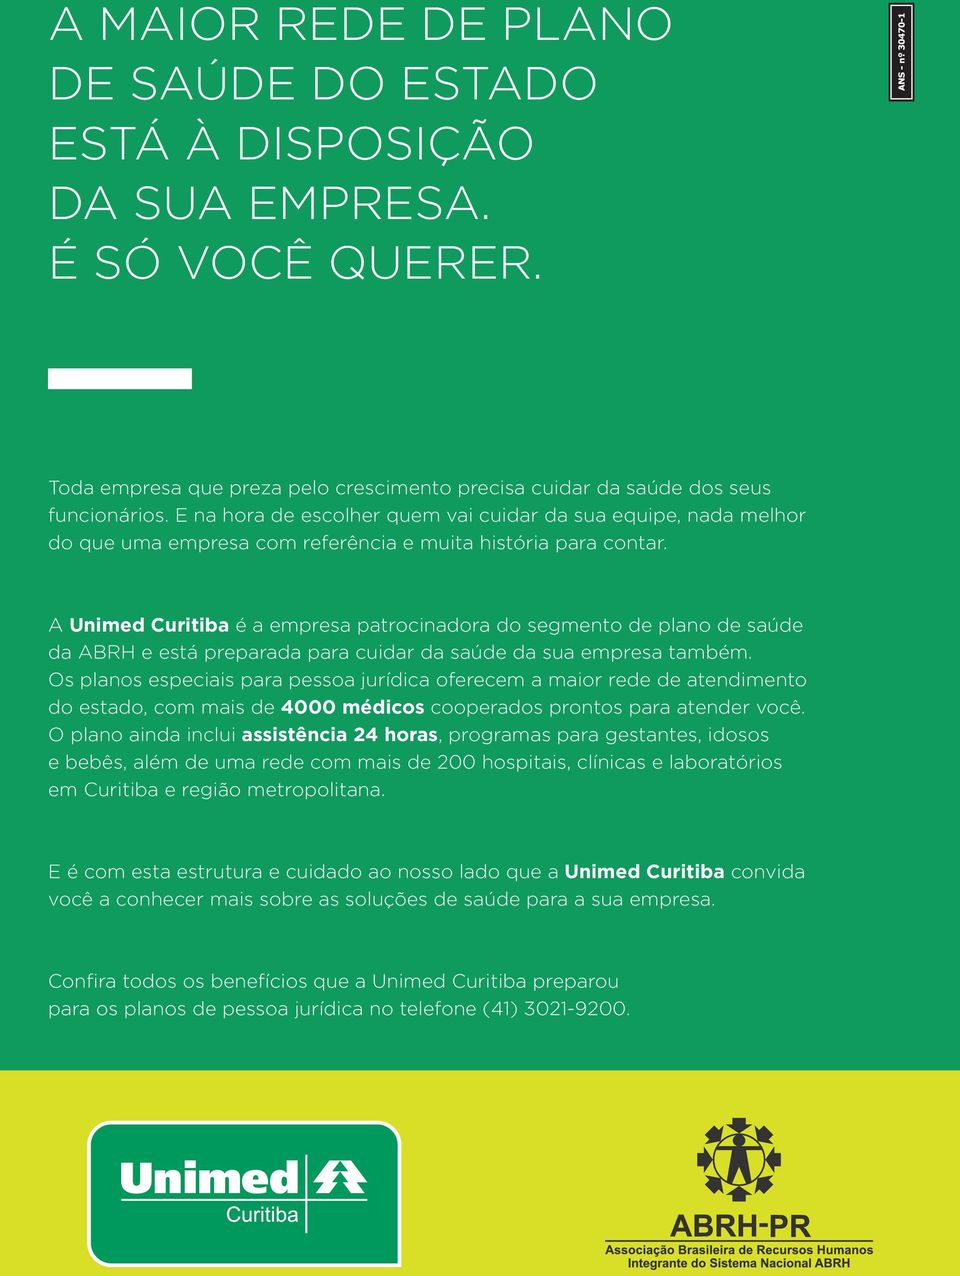 A Uimed Curitiba é a empresa patrociadora do segmeto de plao de saúde da ABRH e está preparada para cuidar da saúde da sua empresa também.